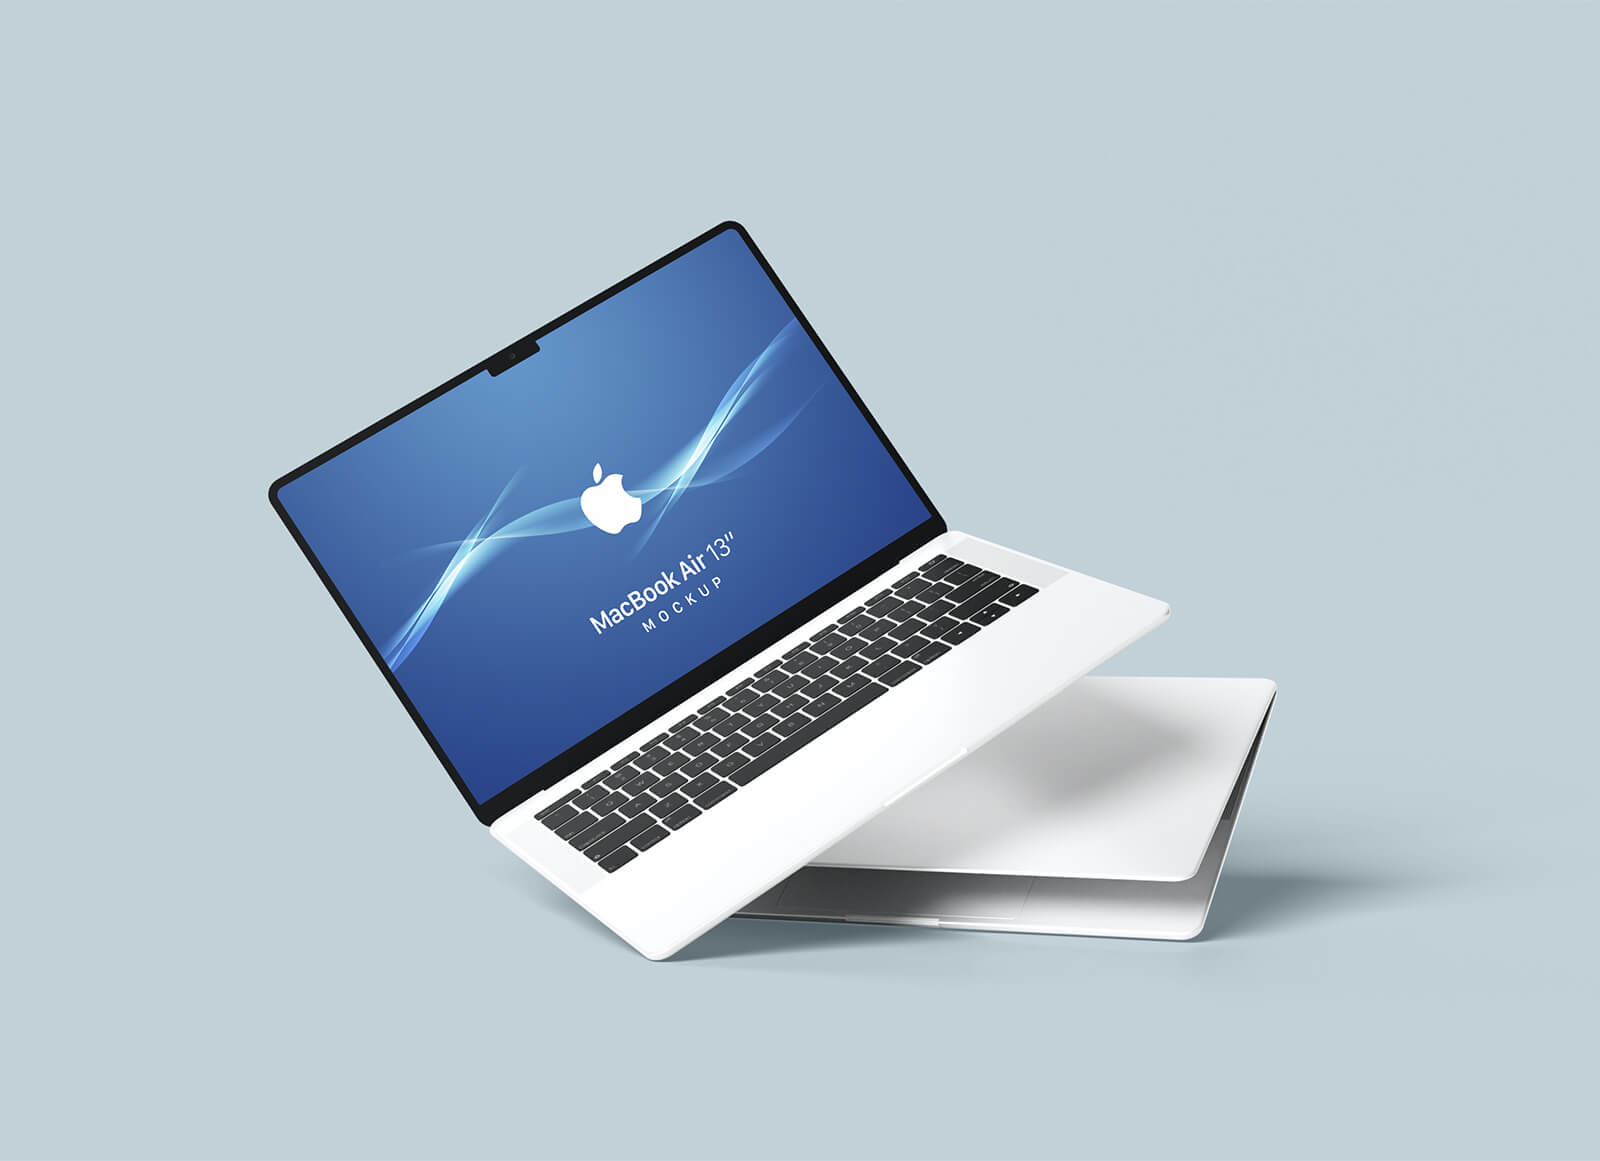 Kippt MacBook Air 13? Verspotten